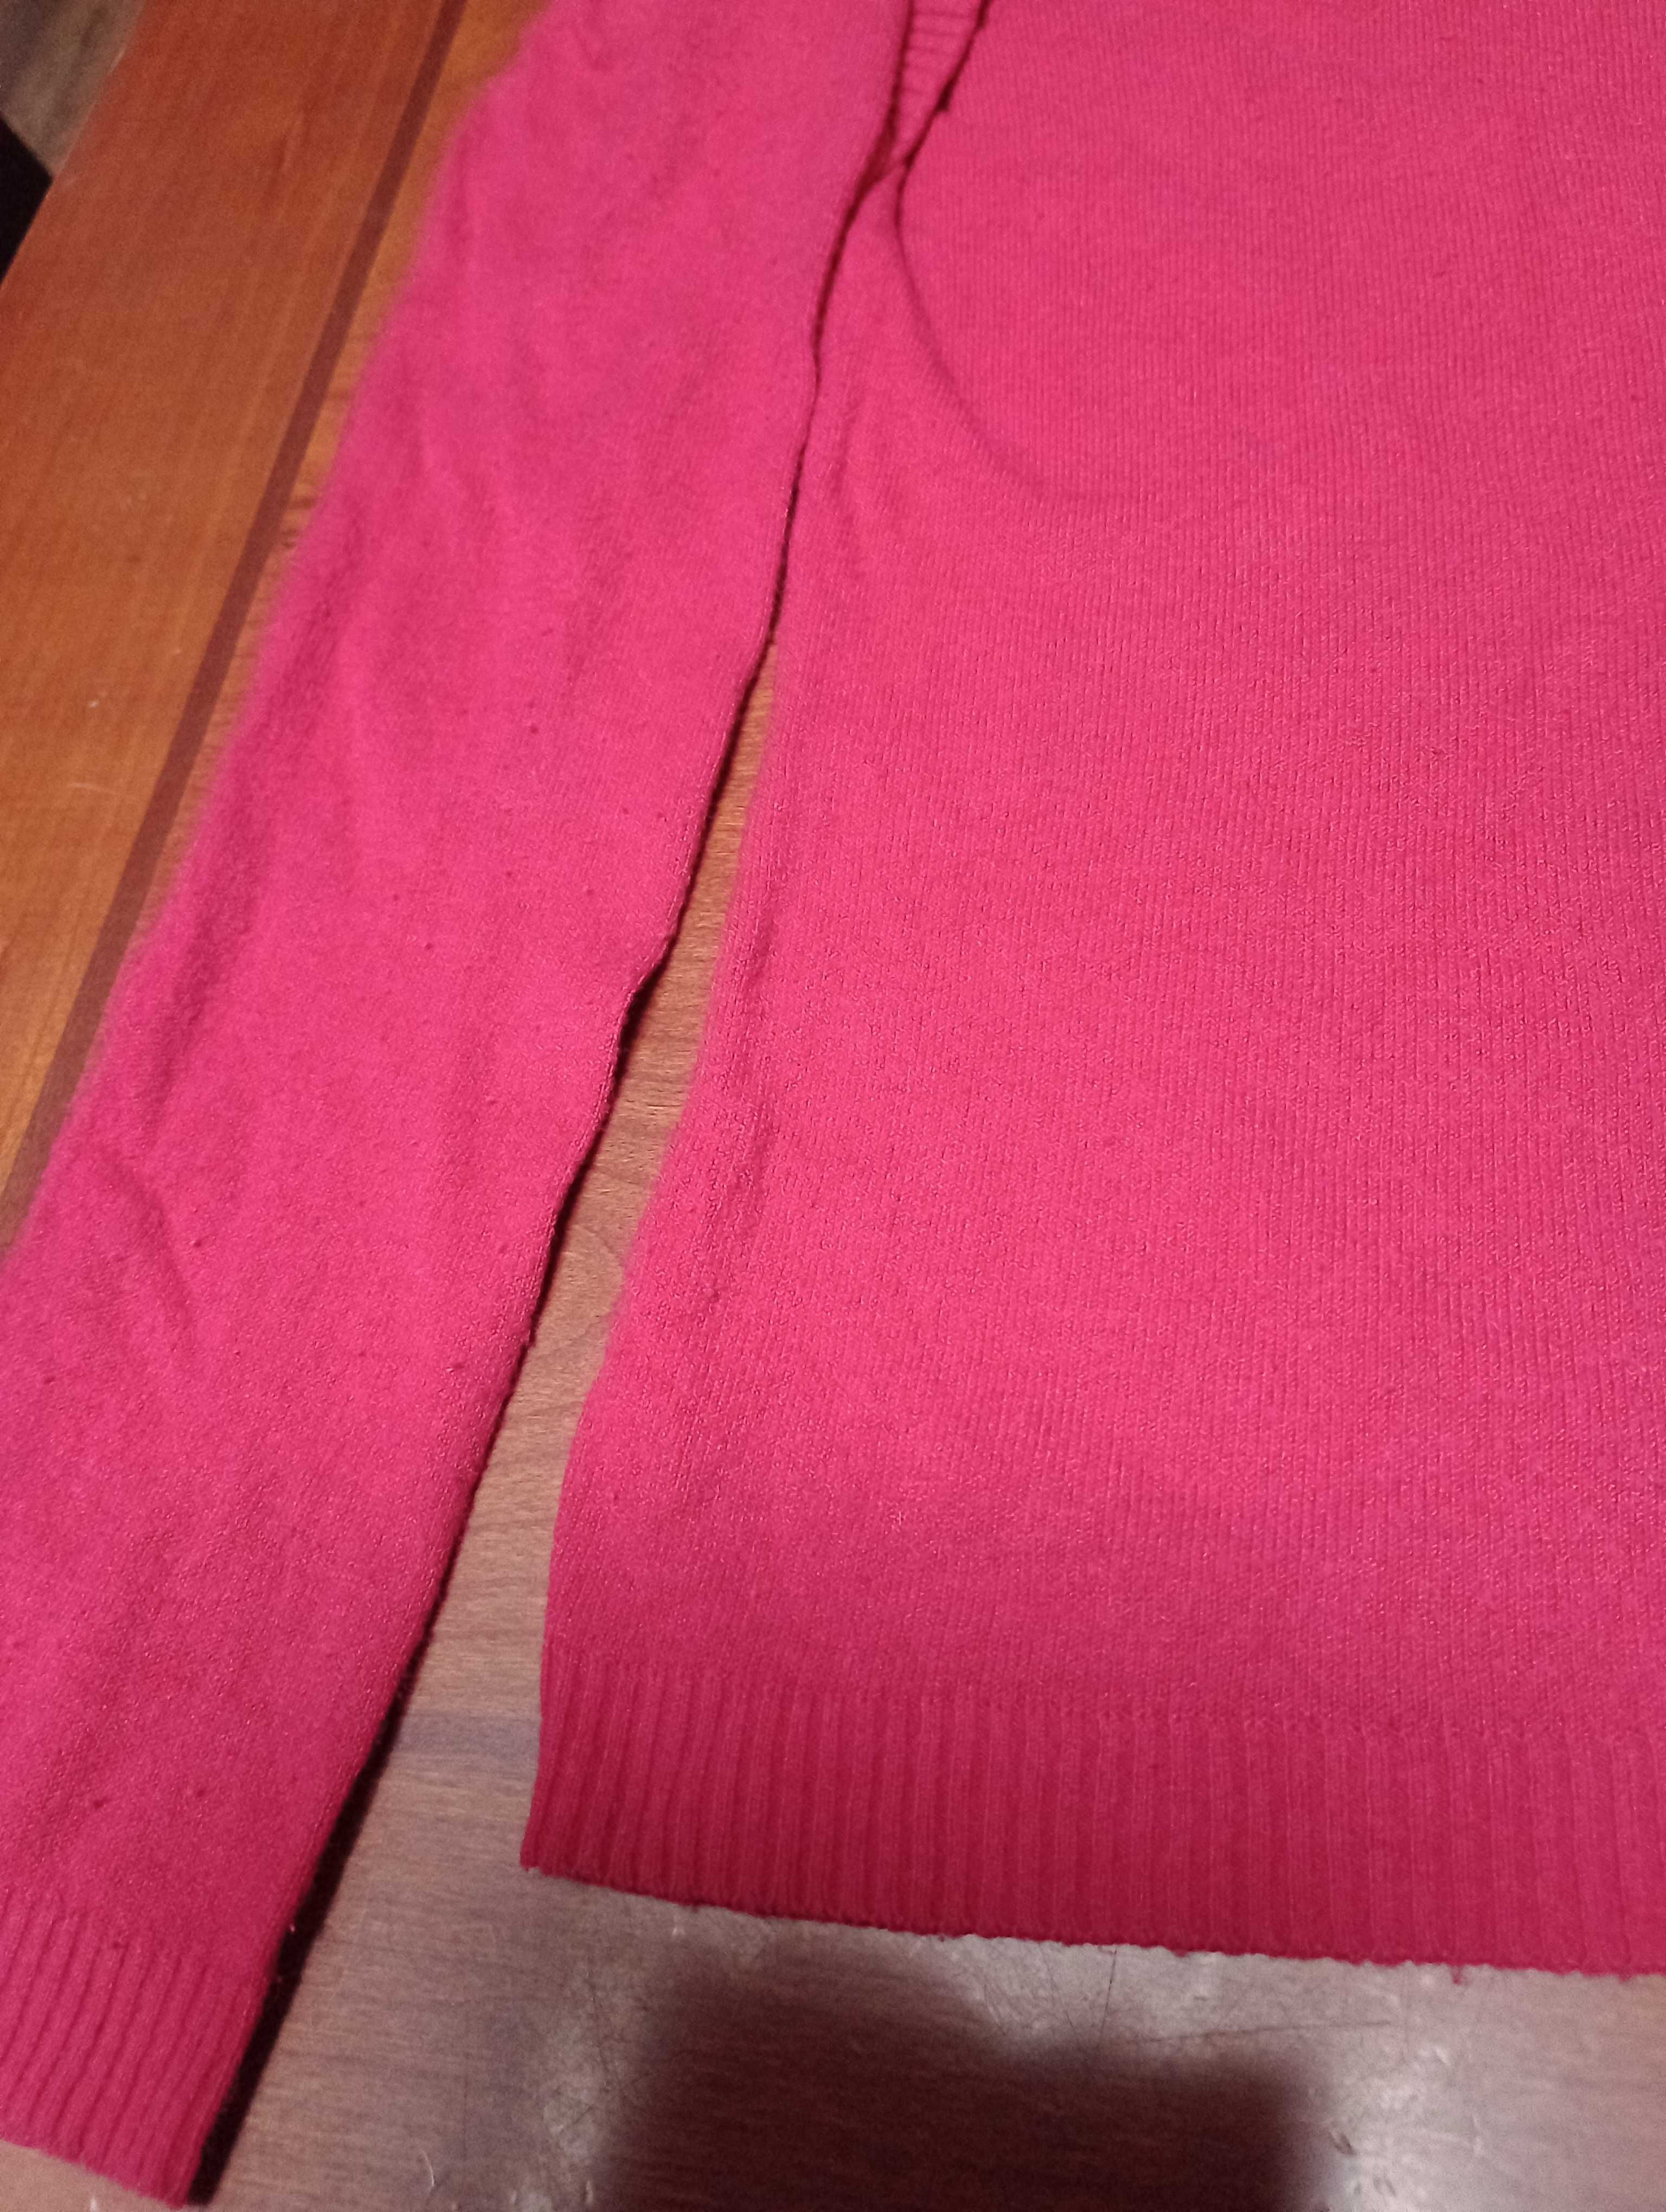 Sweterek czerwony za 5 zl